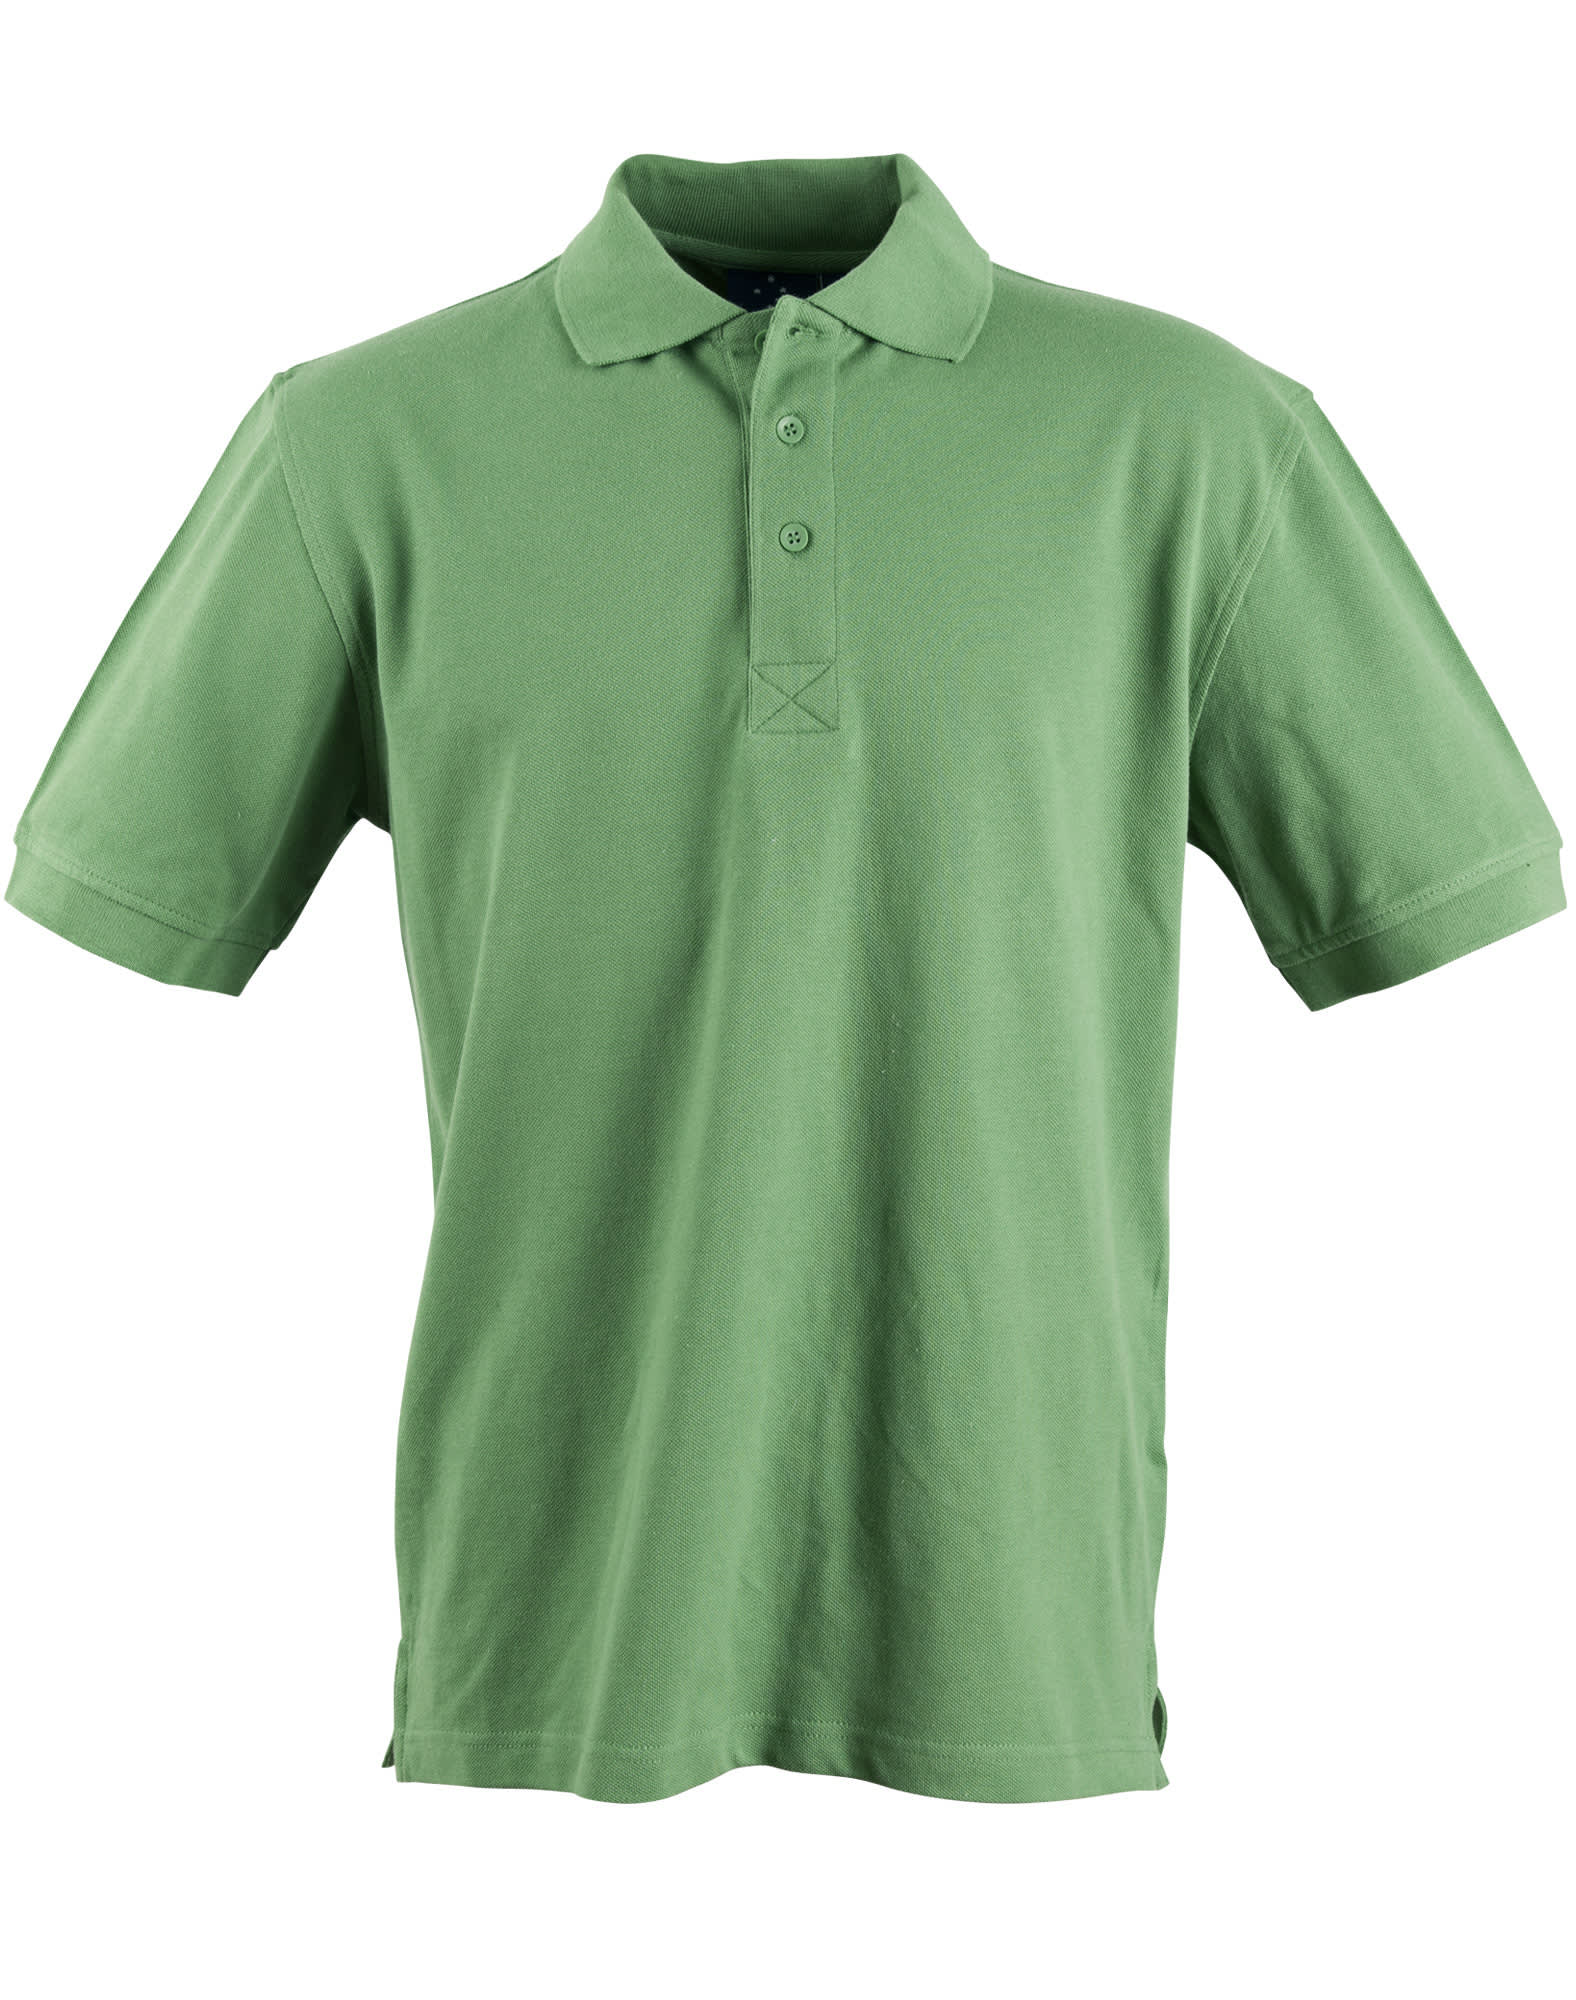 Mens Cotton Pique Knit Short Sleeve Polo PS39 | Green